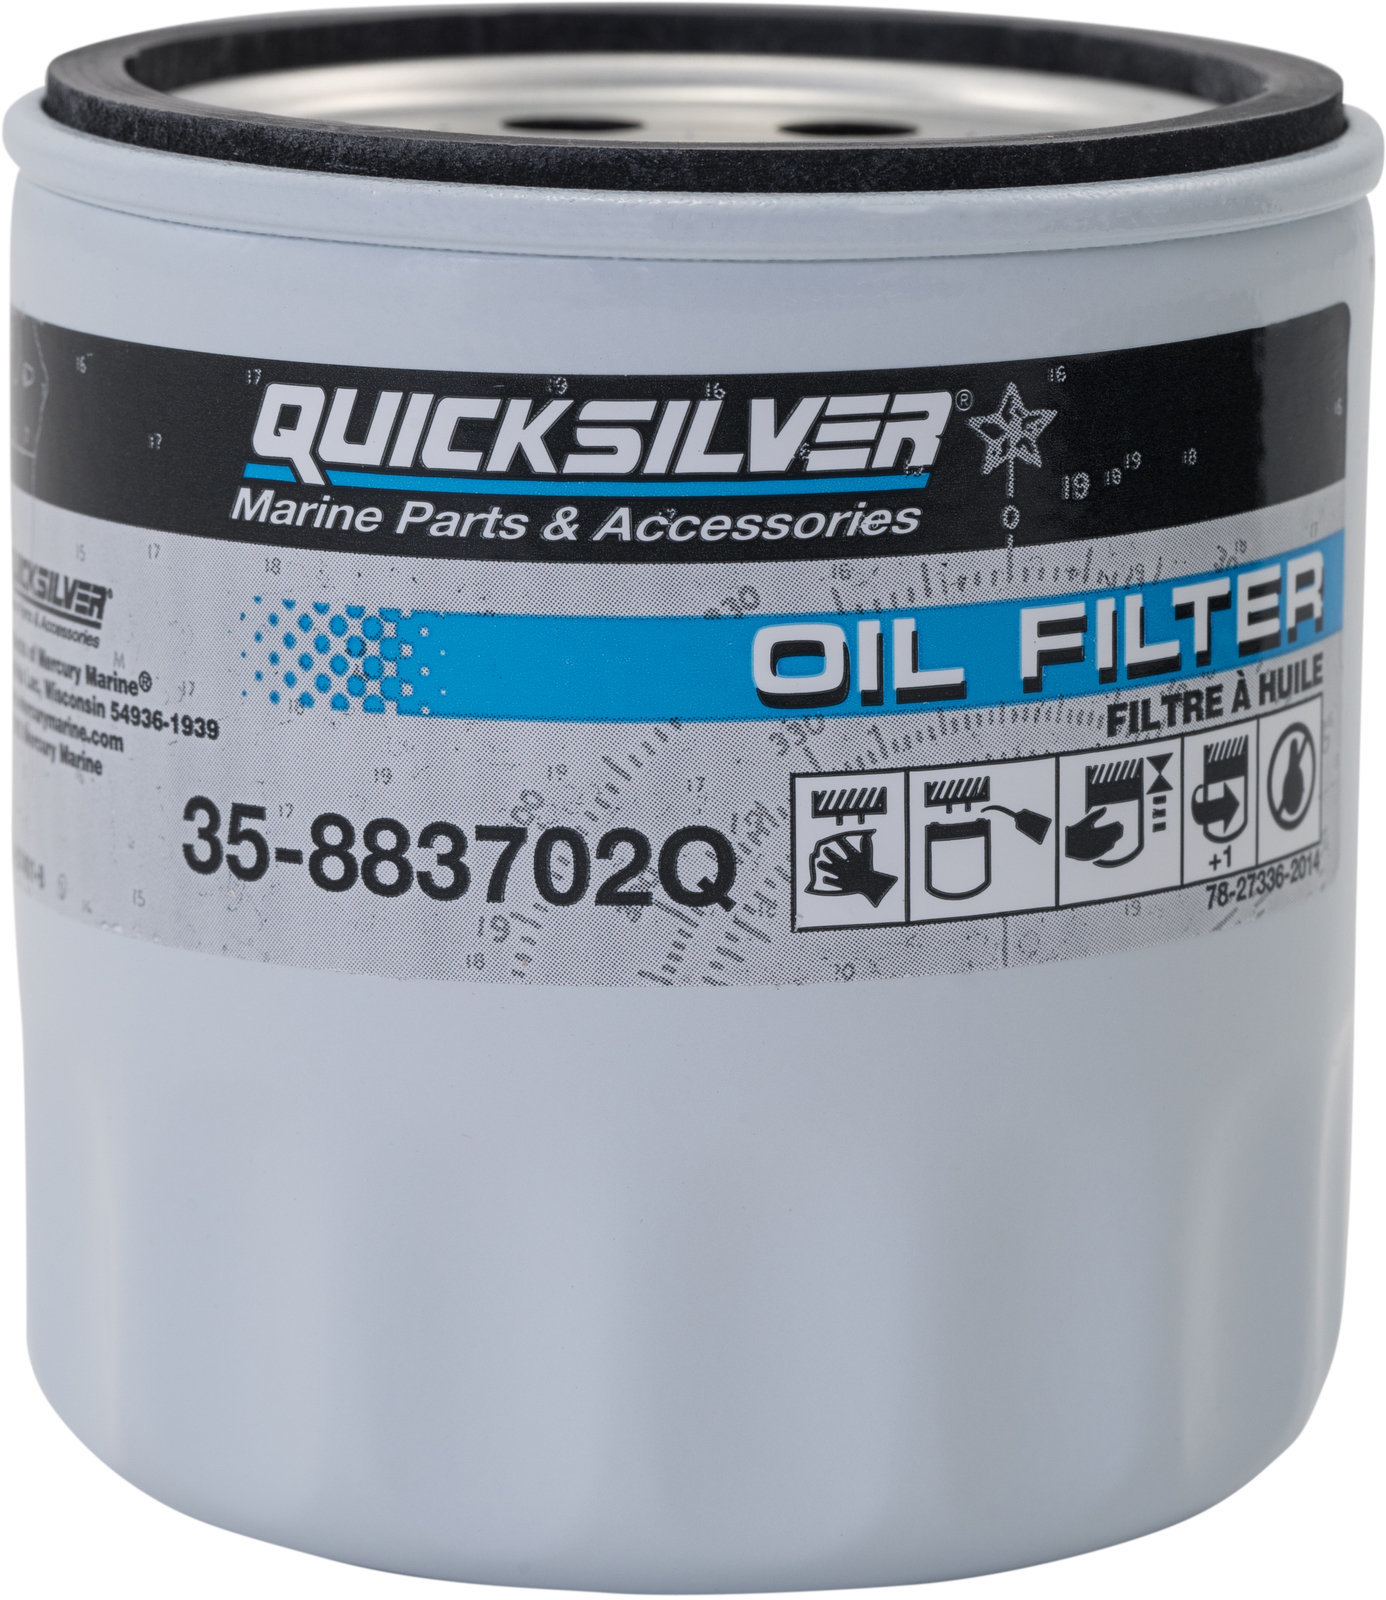 Bootsmotor Filter Quicksilver Oil Filter 35-883702Q